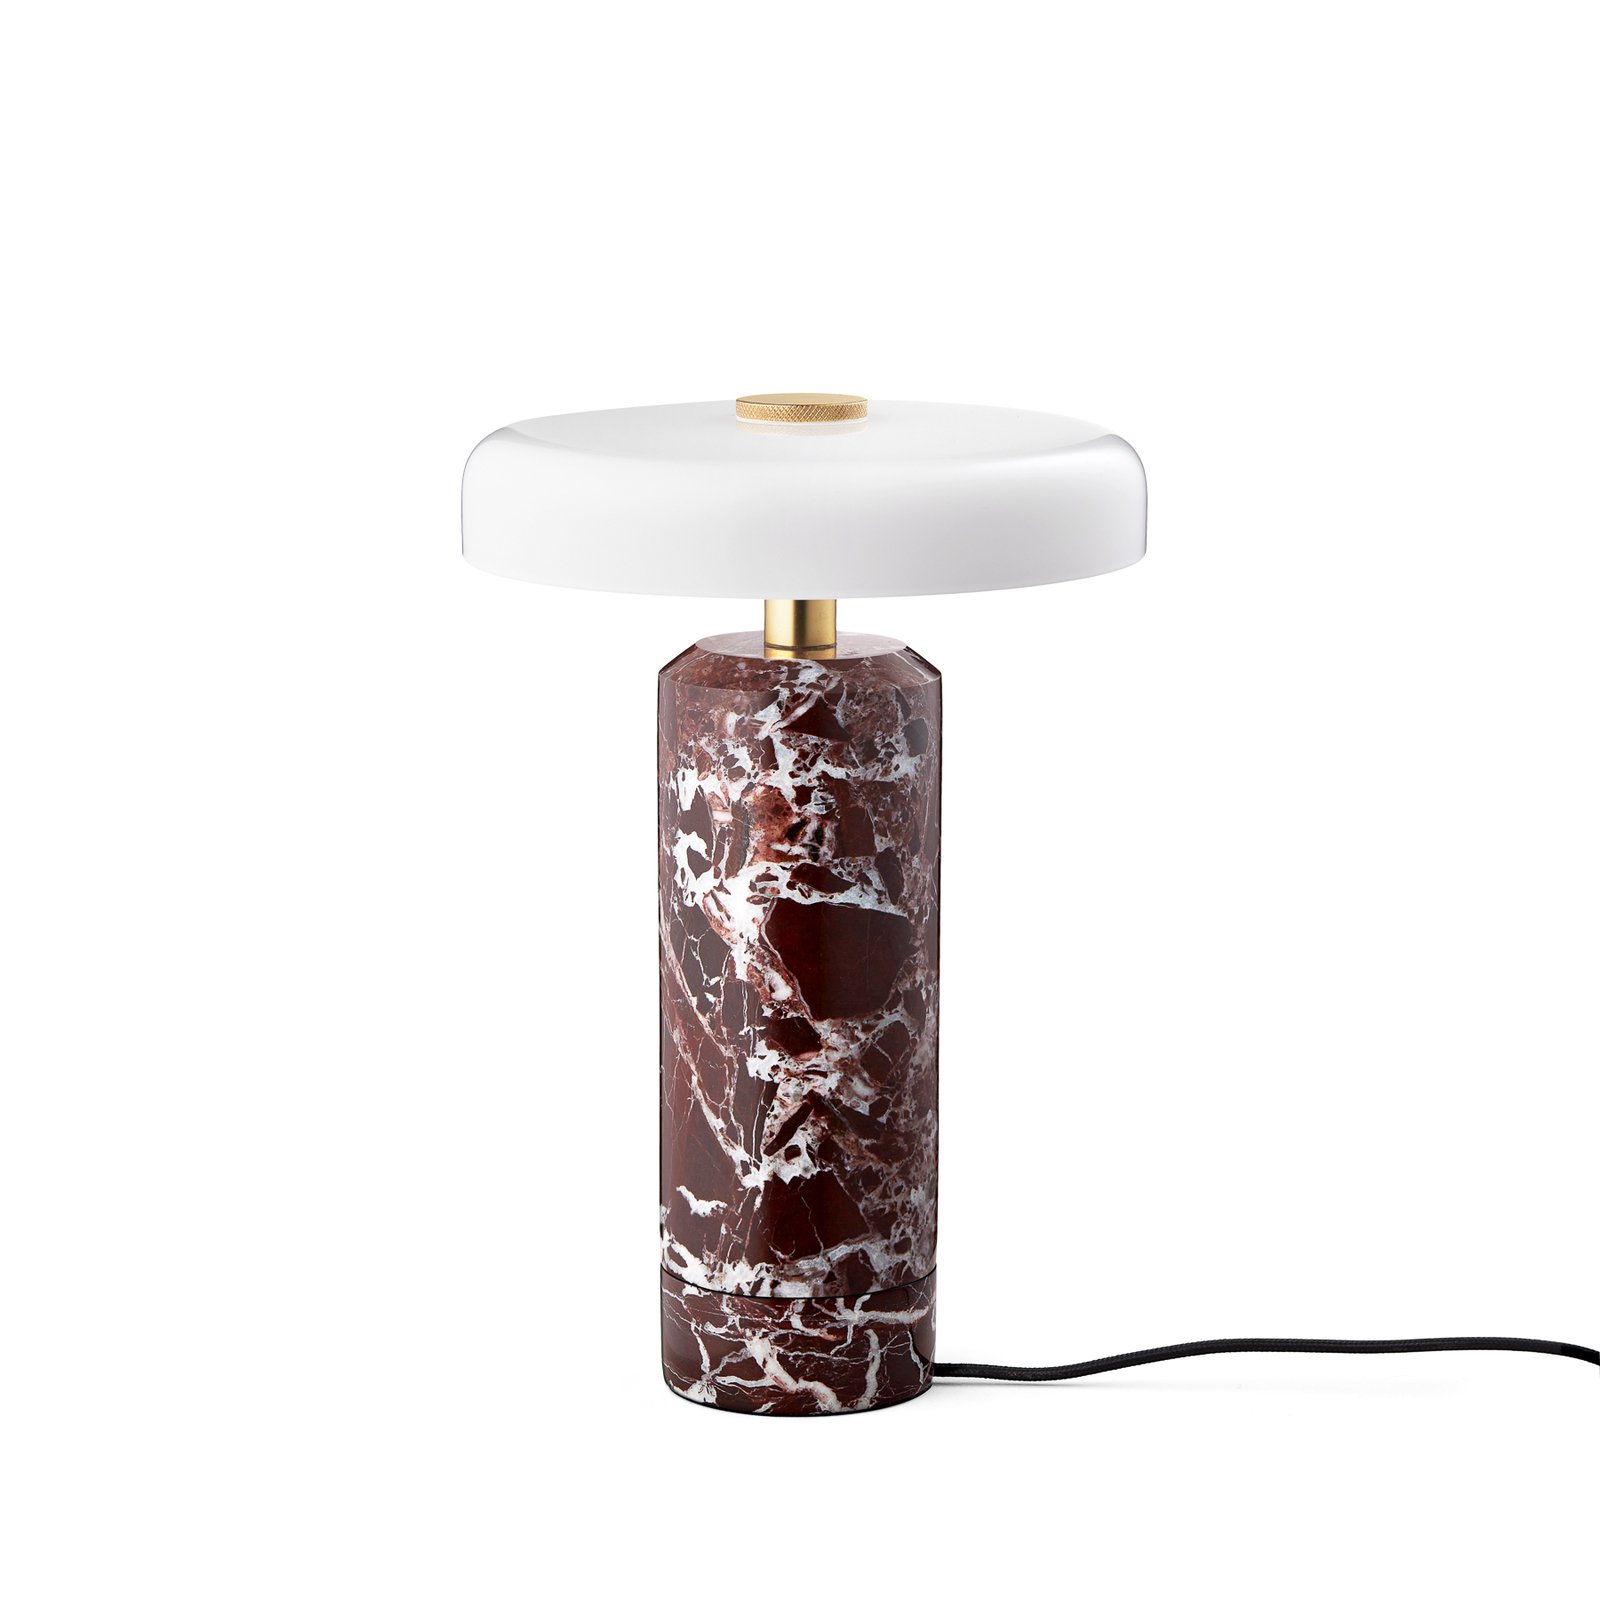 Trip LED oplaadbare tafellamp, rood / wit, marmer, glas, IP44